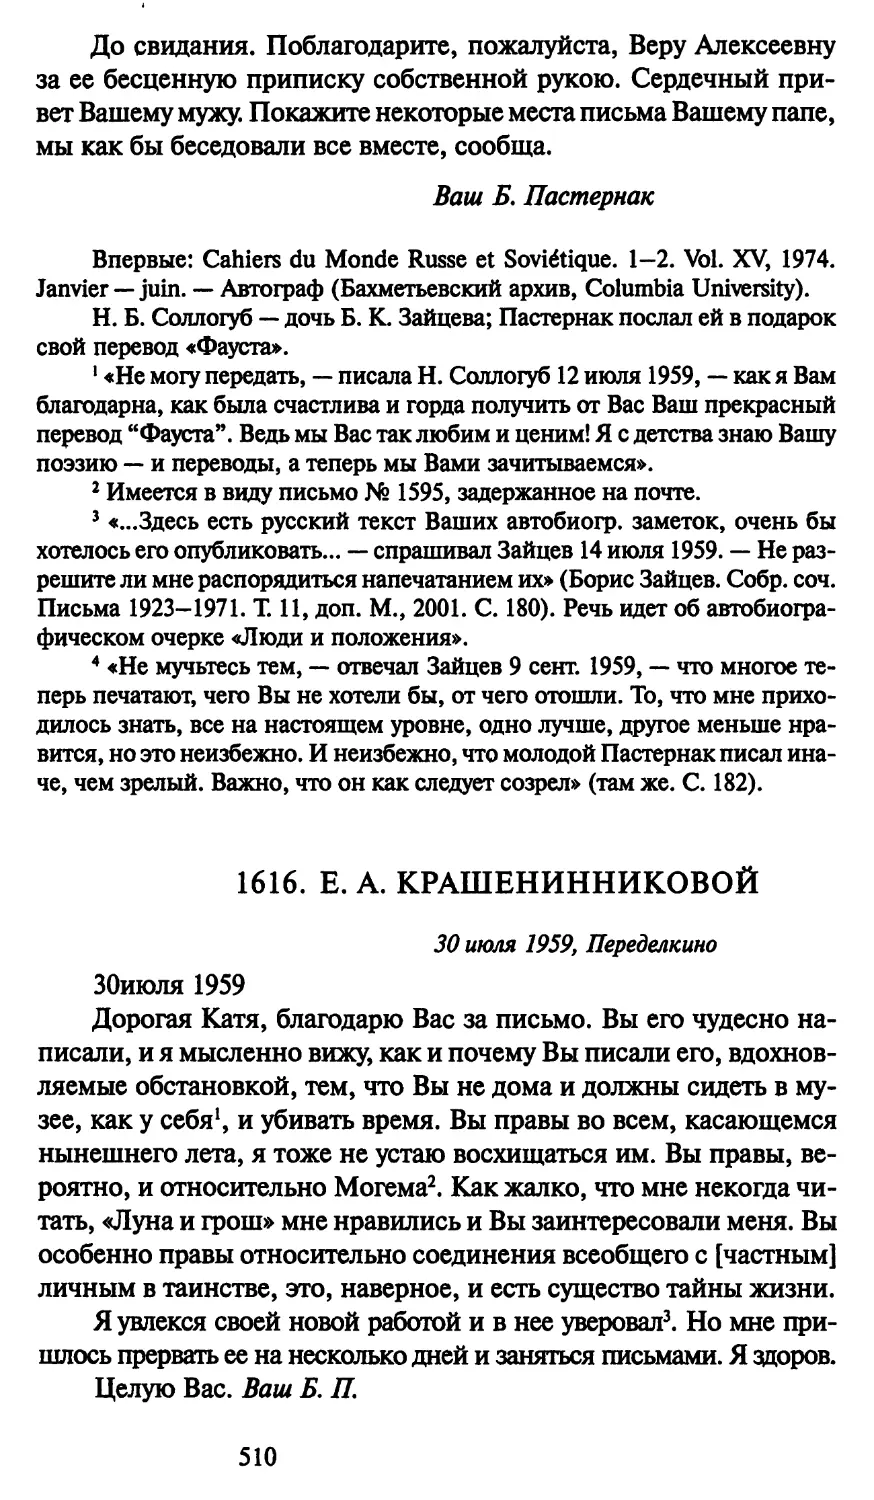 1616. Е. А. Крашенинниковой 30 июля 1959